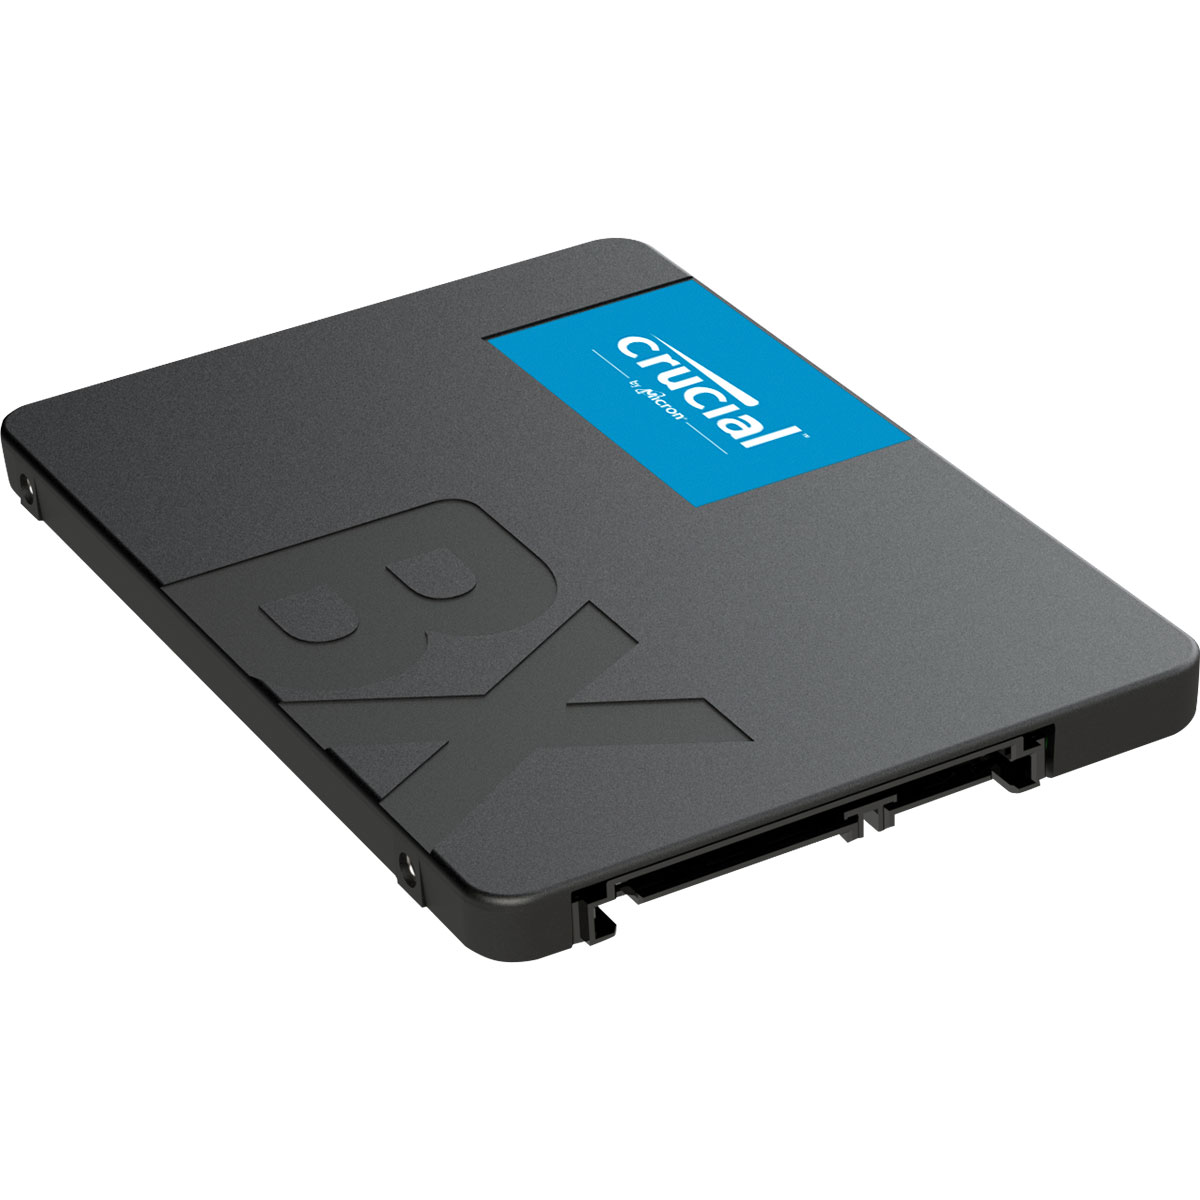 Disque dur SSD Crucial BX500 500 Go 2.5 pouces (7mm) Serial ATA 3 (6Gb/s)s, informatique ile de la Runion 974